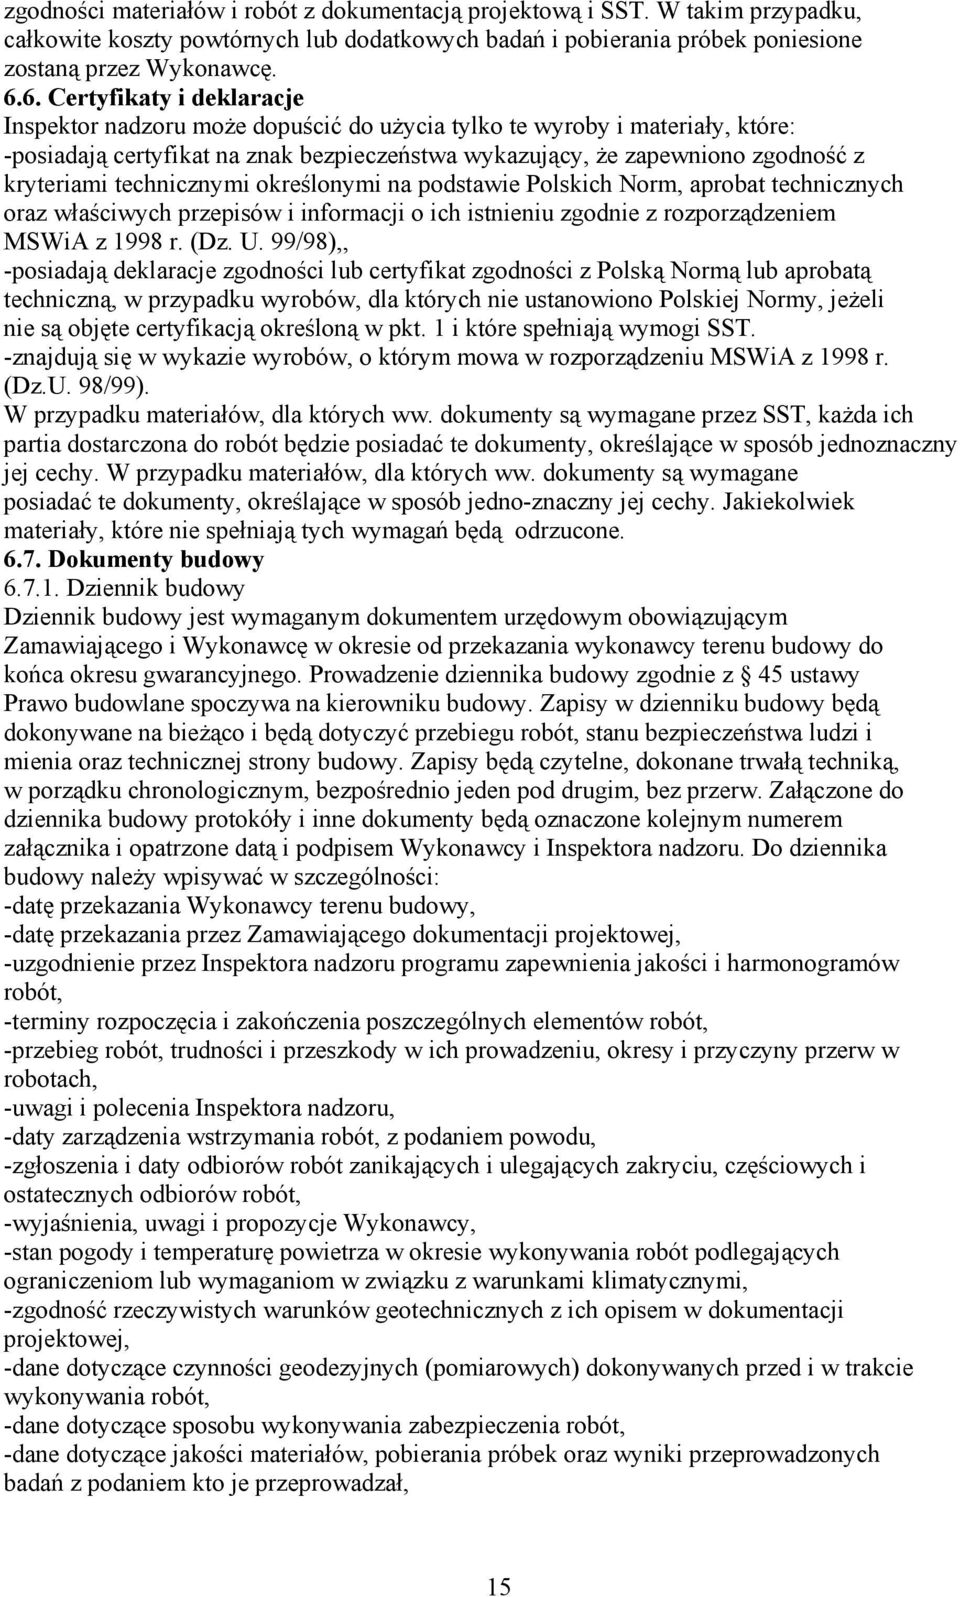 technicznymi określonymi na podstawie Polskich Norm, aprobat technicznych oraz właściwych przepisów i informacji o ich istnieniu zgodnie z rozporządzeniem MSWiA z 1998 r. (Dz. U.